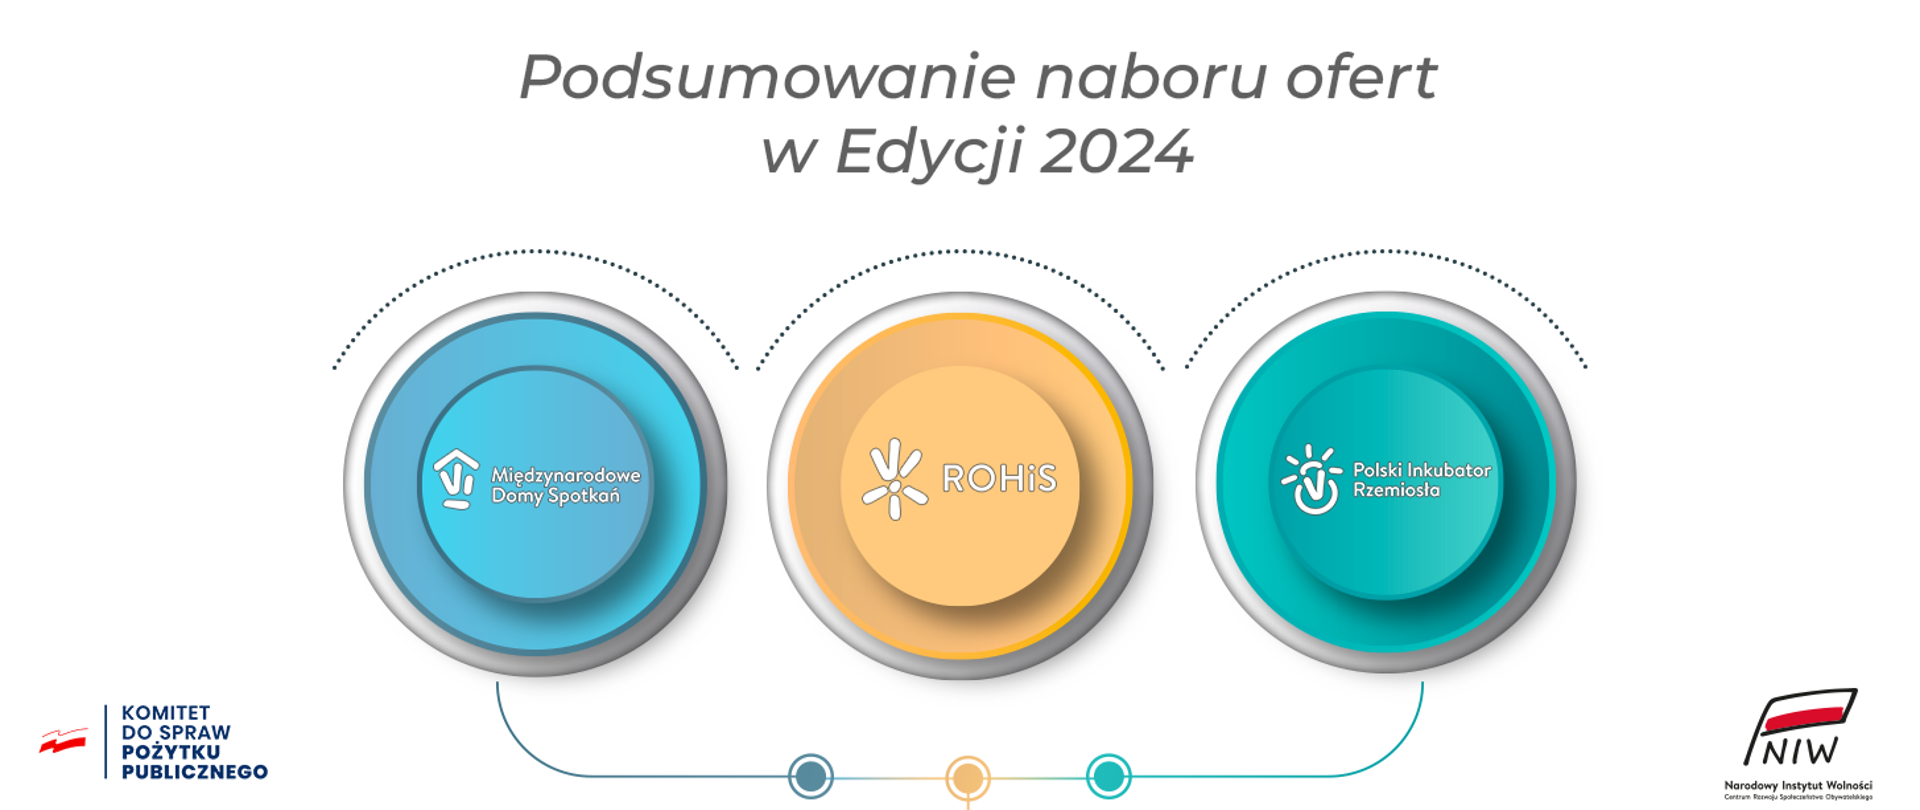 Grafika przedstawiająca 3 koła, w których znajdują się nazwy programów: Międzynarodowe Domy Spotkań, ROHiS, Polski Inkubator Rzemiosła